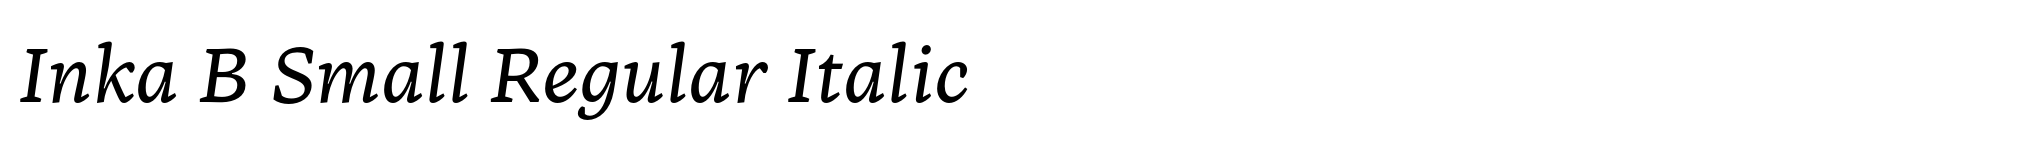 Inka B Small Regular Italic image